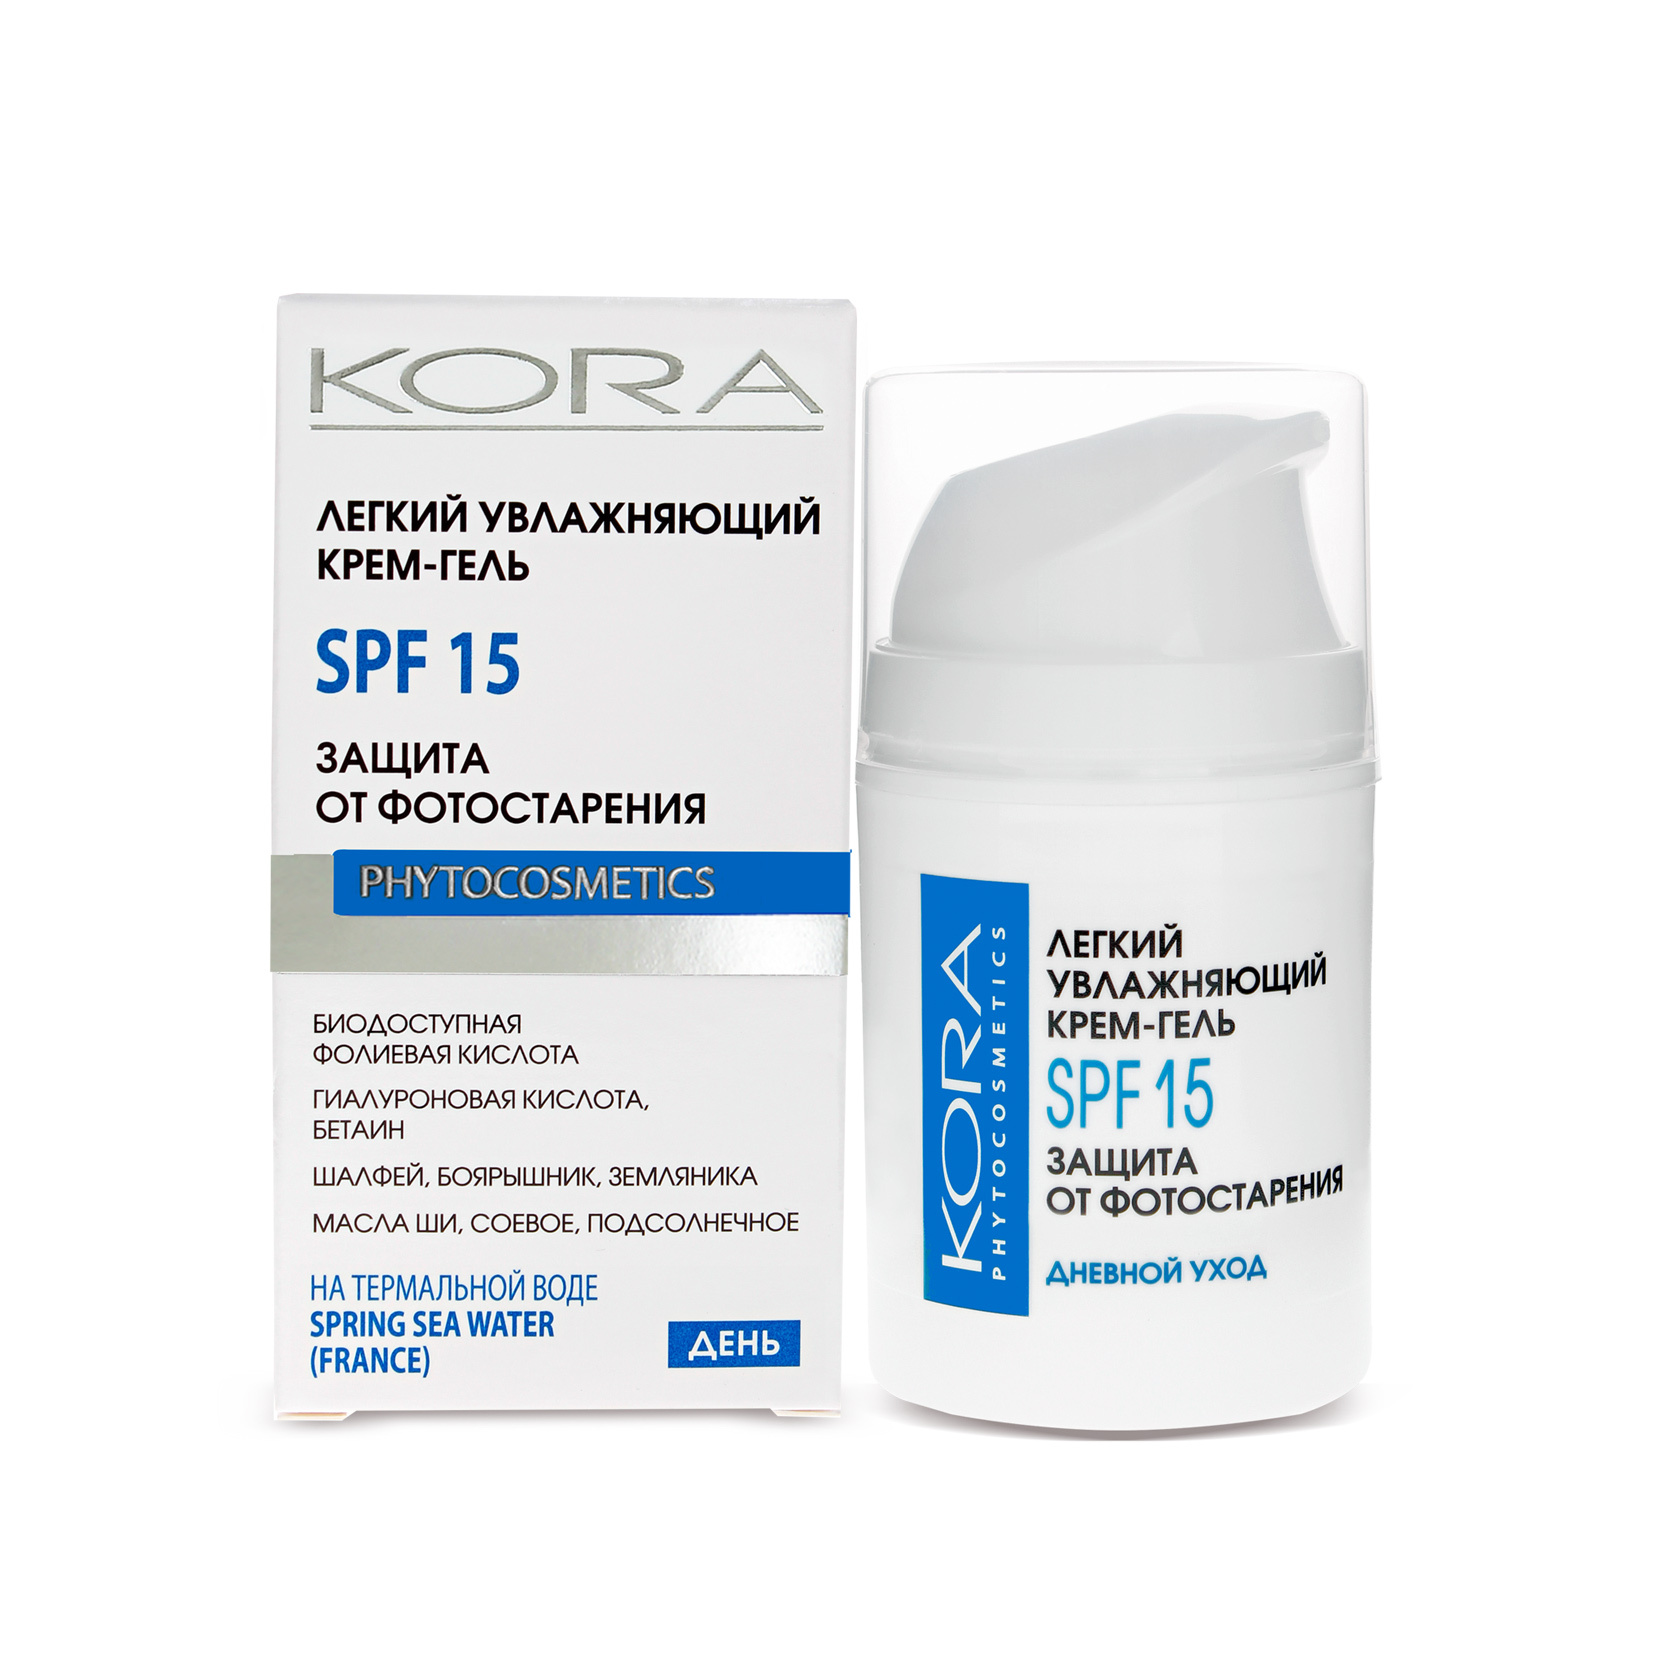 Дневной крем для лица с spf защитой. Kora - крем-гель легкий увлажняющий, SPF-15. Kora phytocosmetics крем. Увлажняющий крем с SPF. SPF крем для лица.